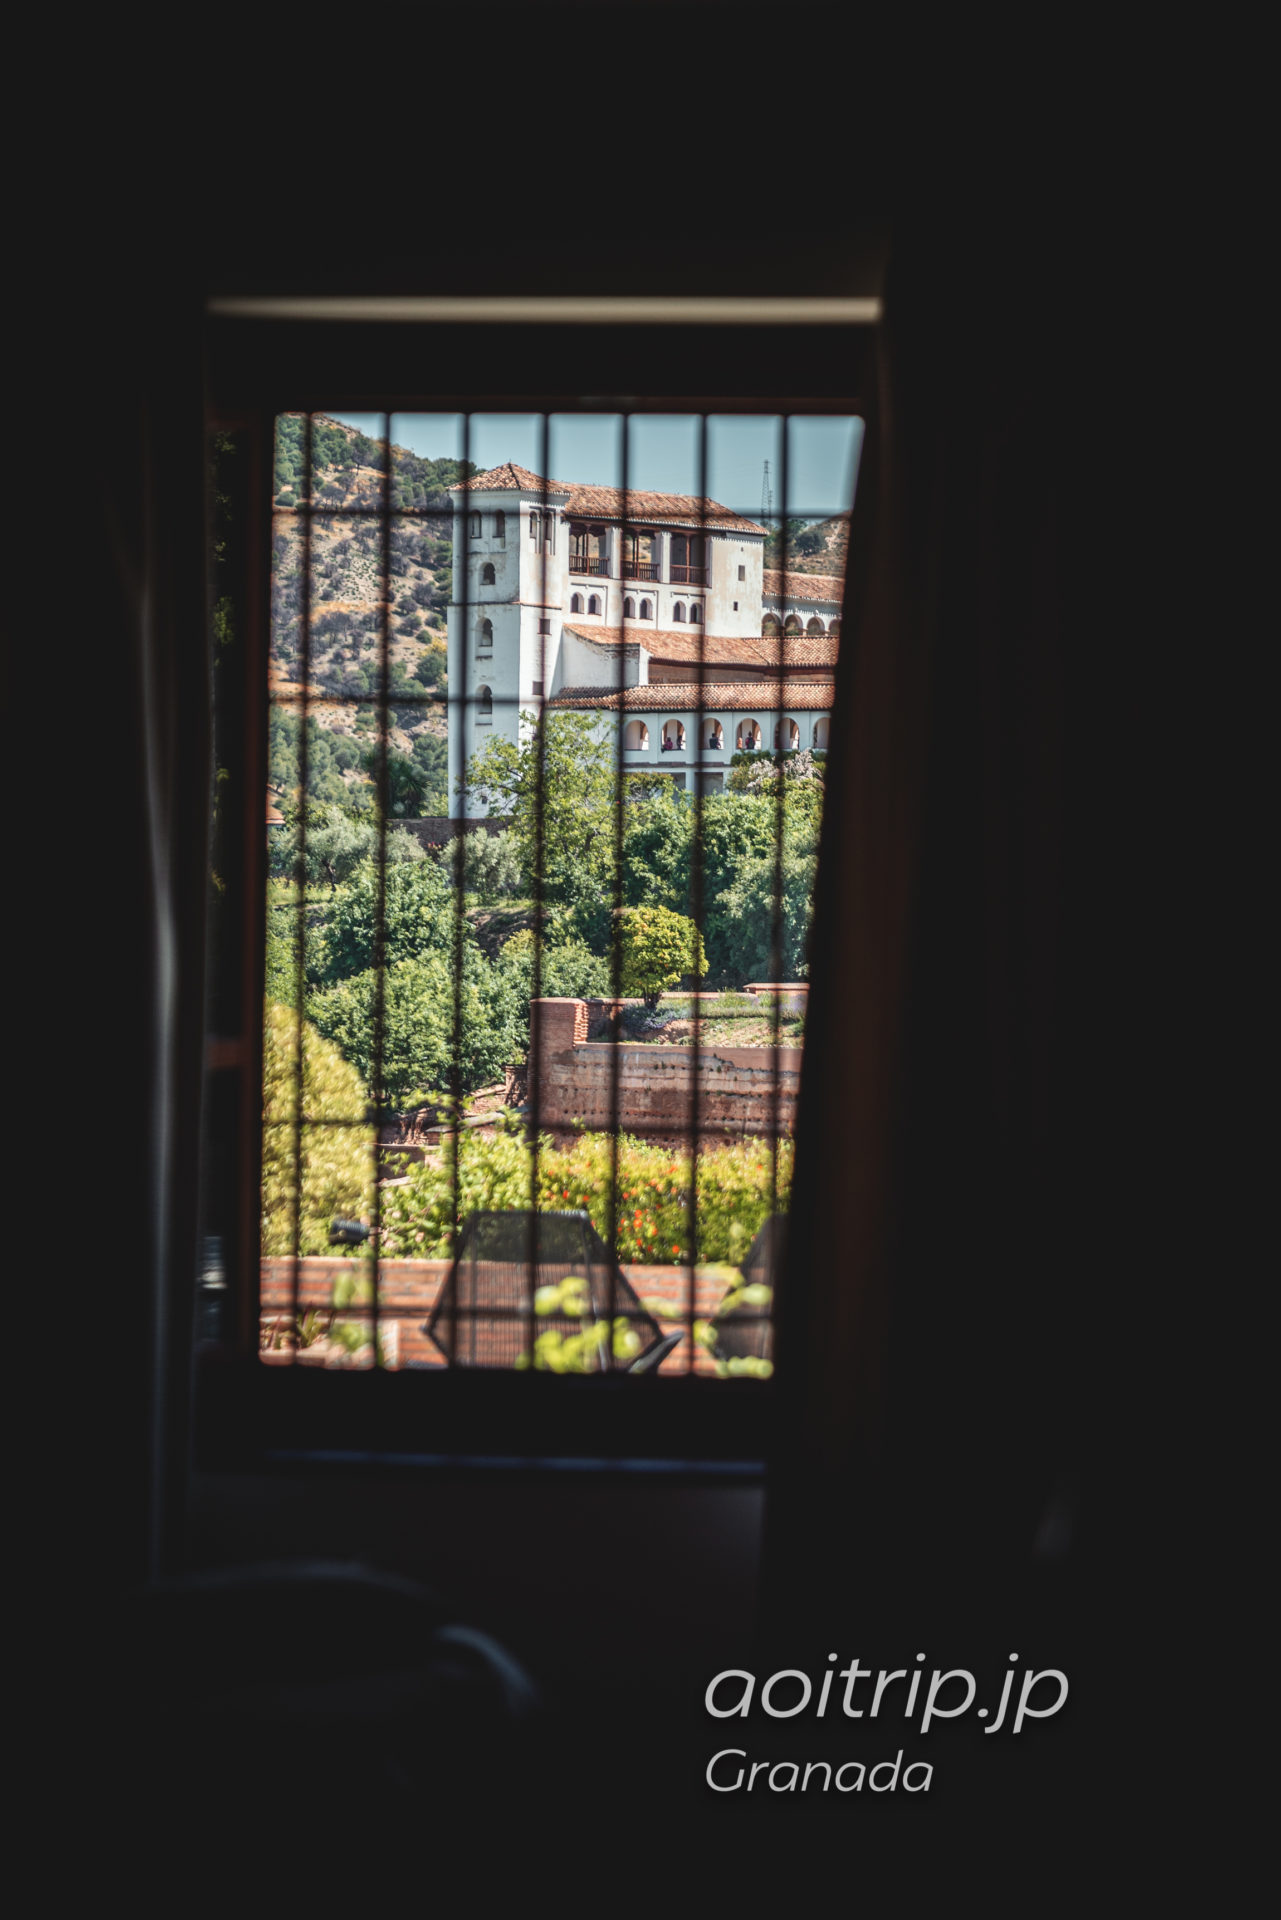 パラドール デ グラナダ 客室からの眺望